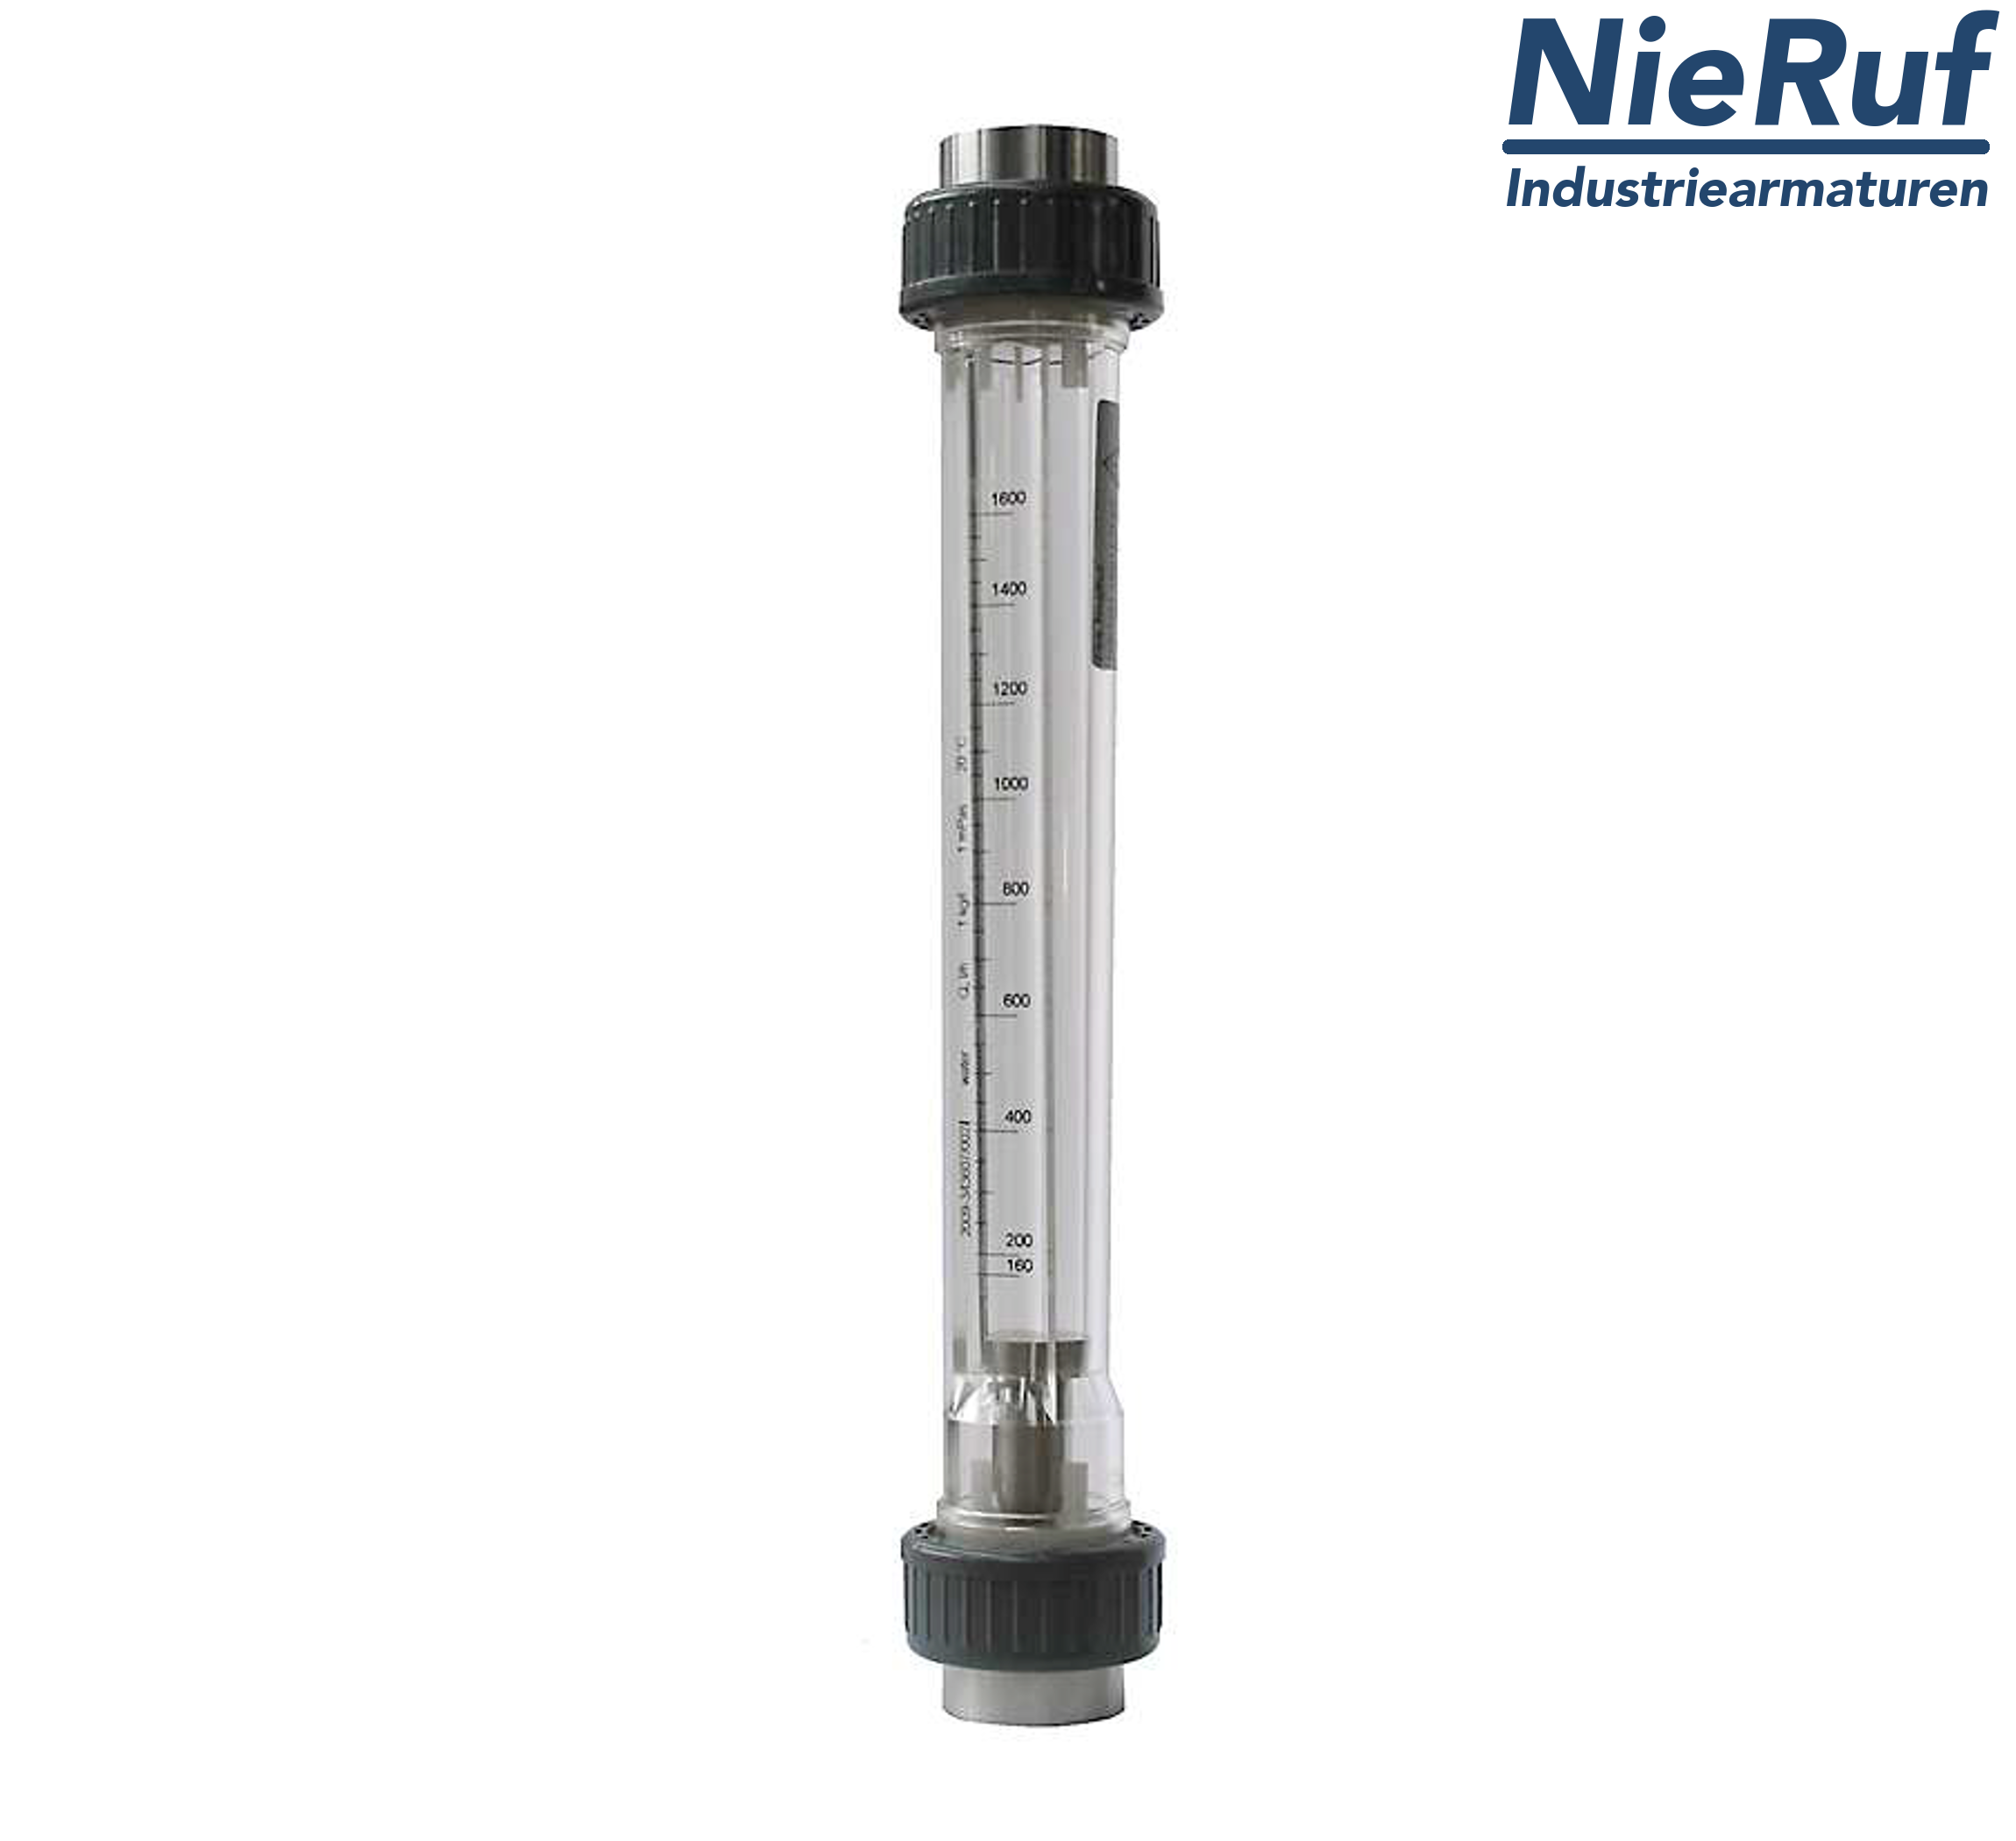 débitmètre à flotteur 1" pouce 160,0 - 1600 l/h eau NBR